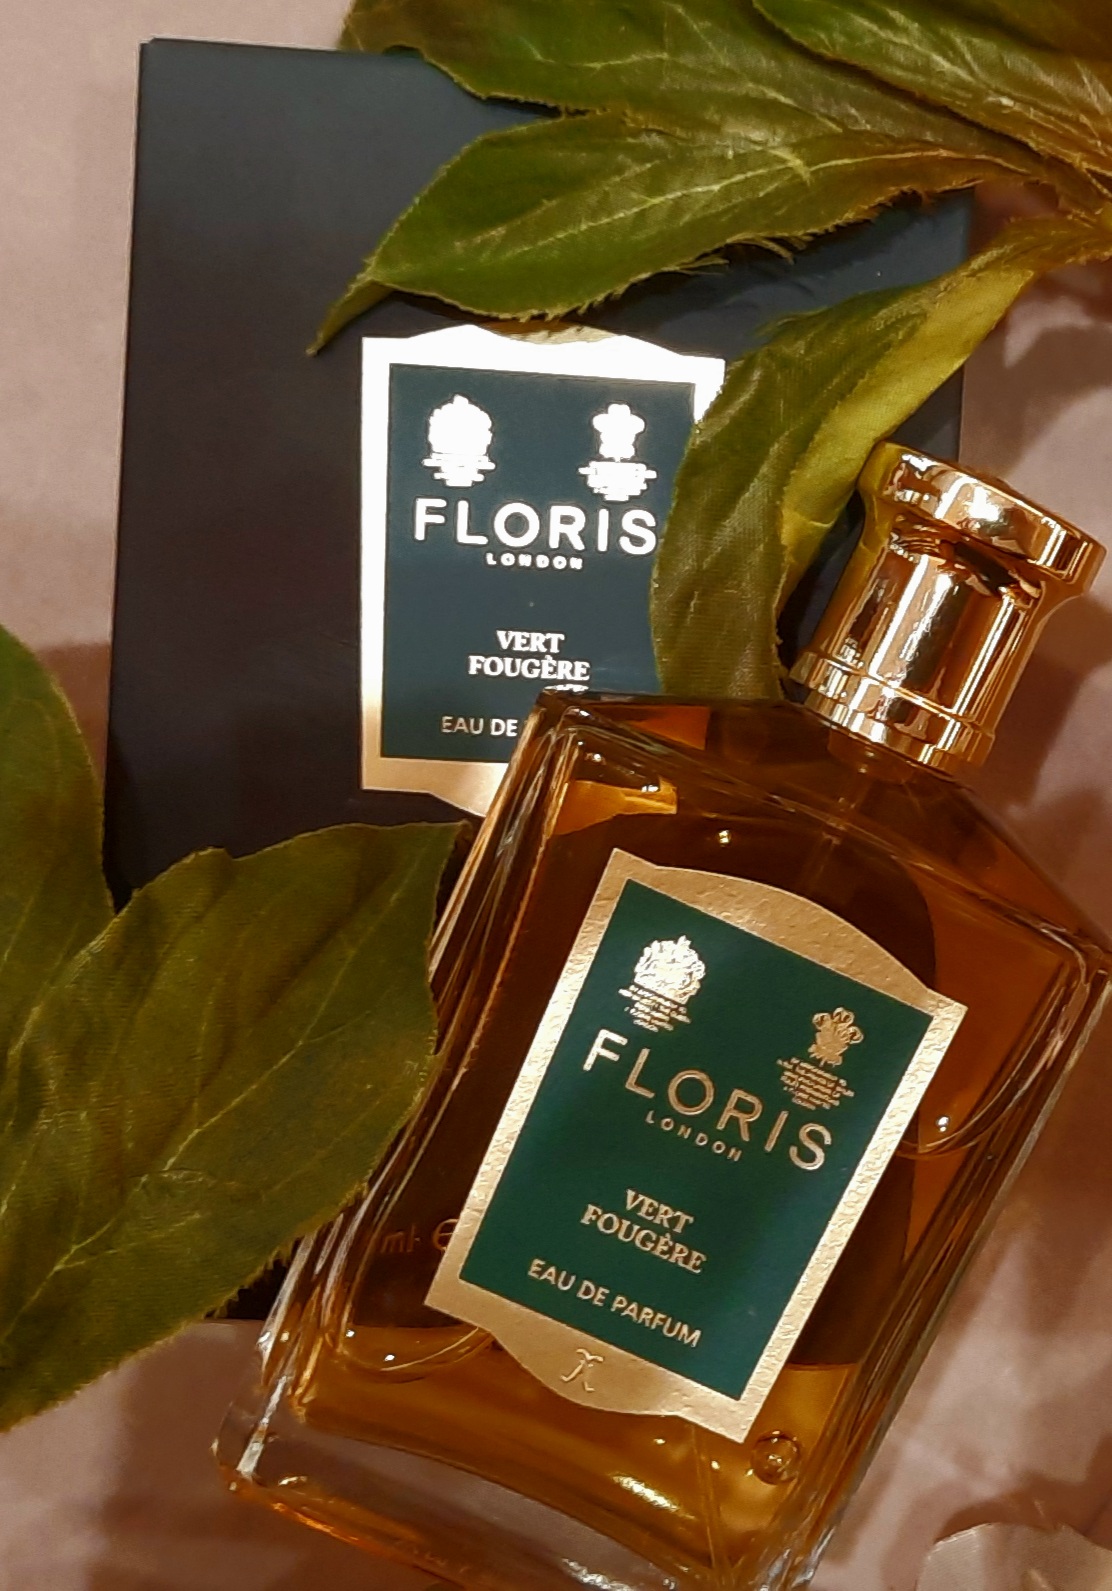 Floris - Vert Fougère